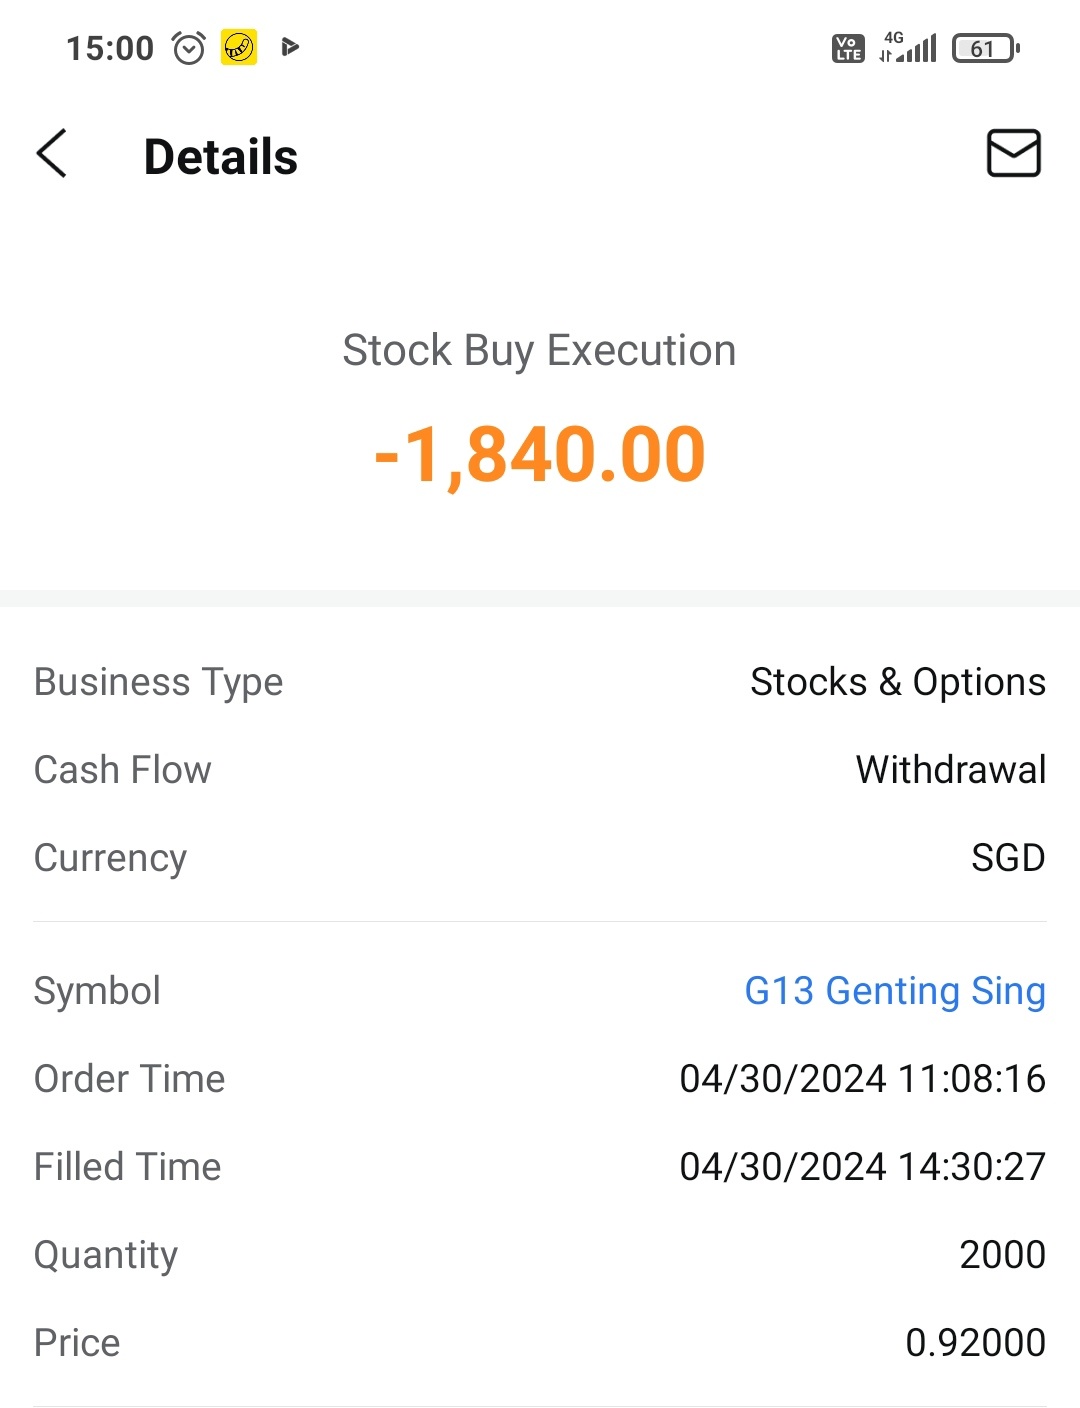 $Genting Sing (G13.SG)$ hi if I buy om 30 April, can I get the dividends?